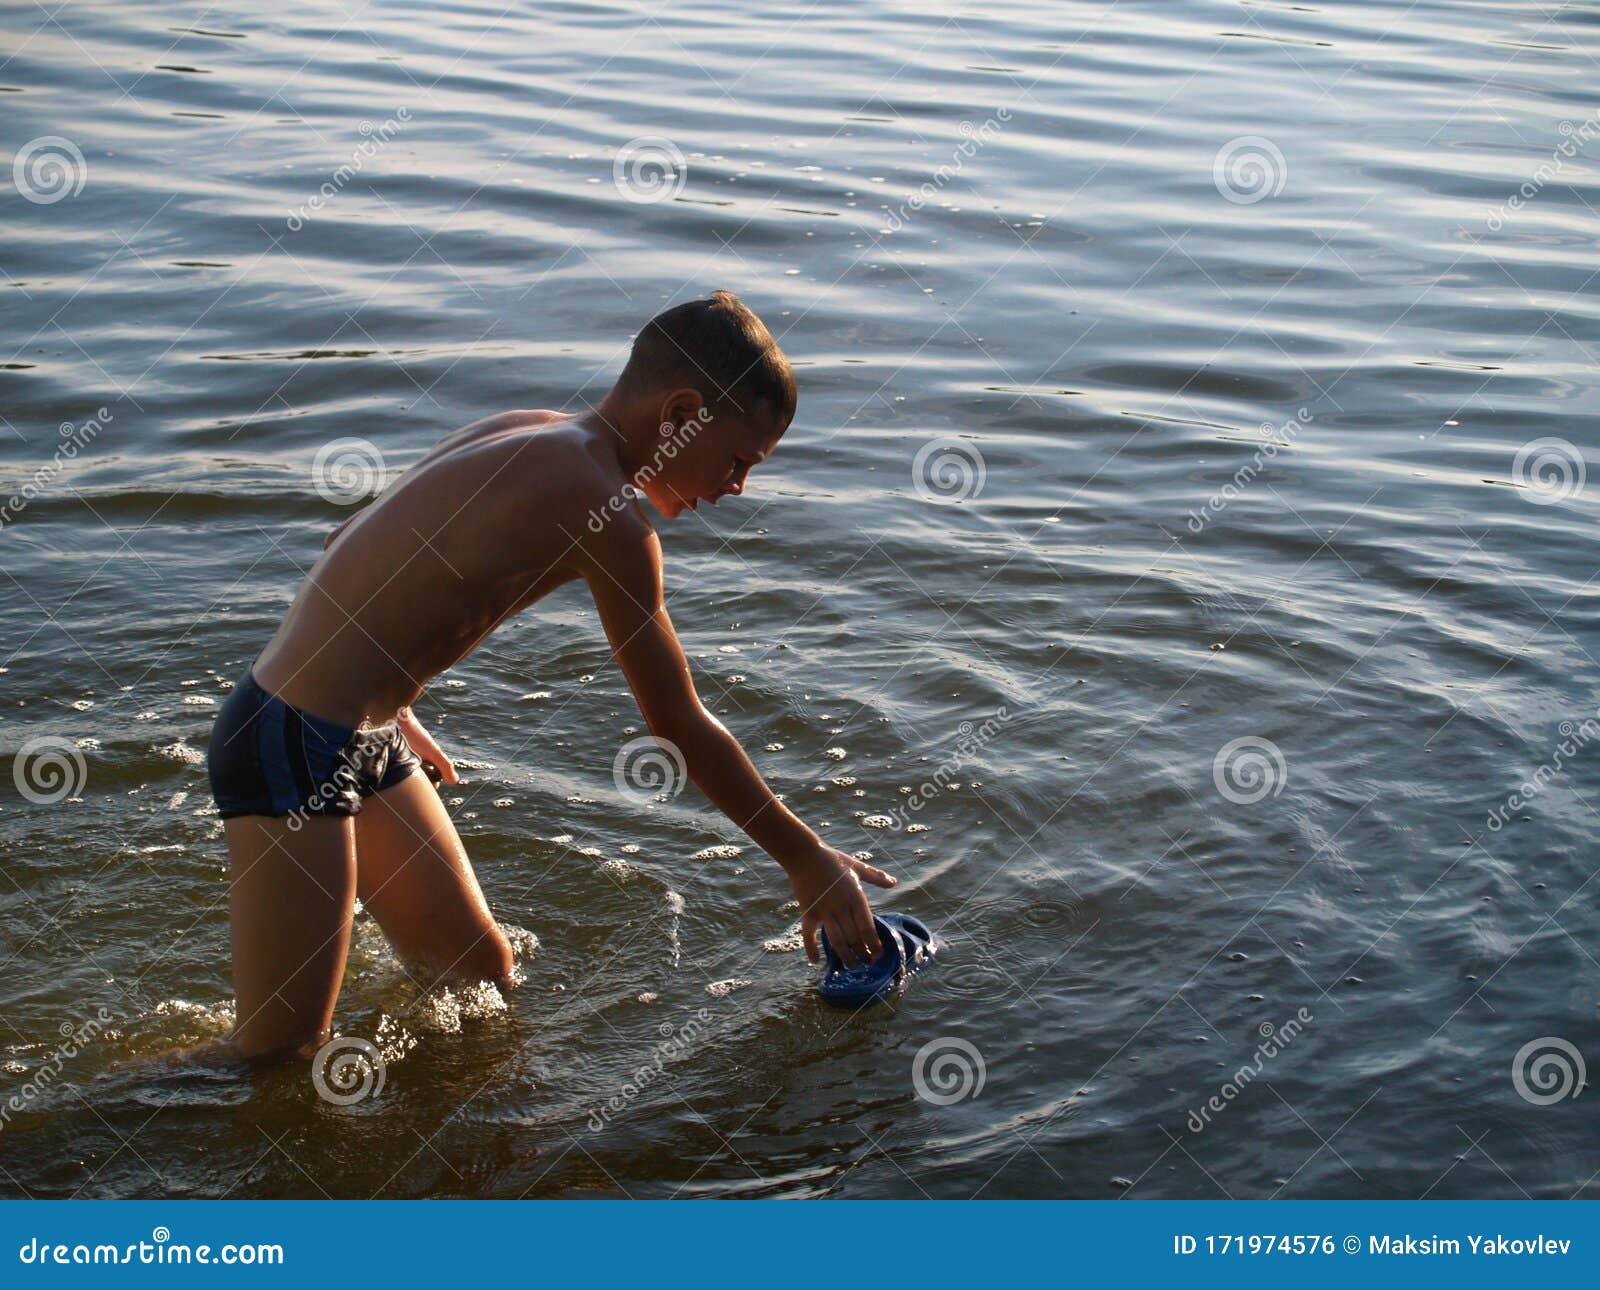 Снимай трусы купаться. Мальчишки на речке. Мальчик на реке. Мальчики купаются в реке.